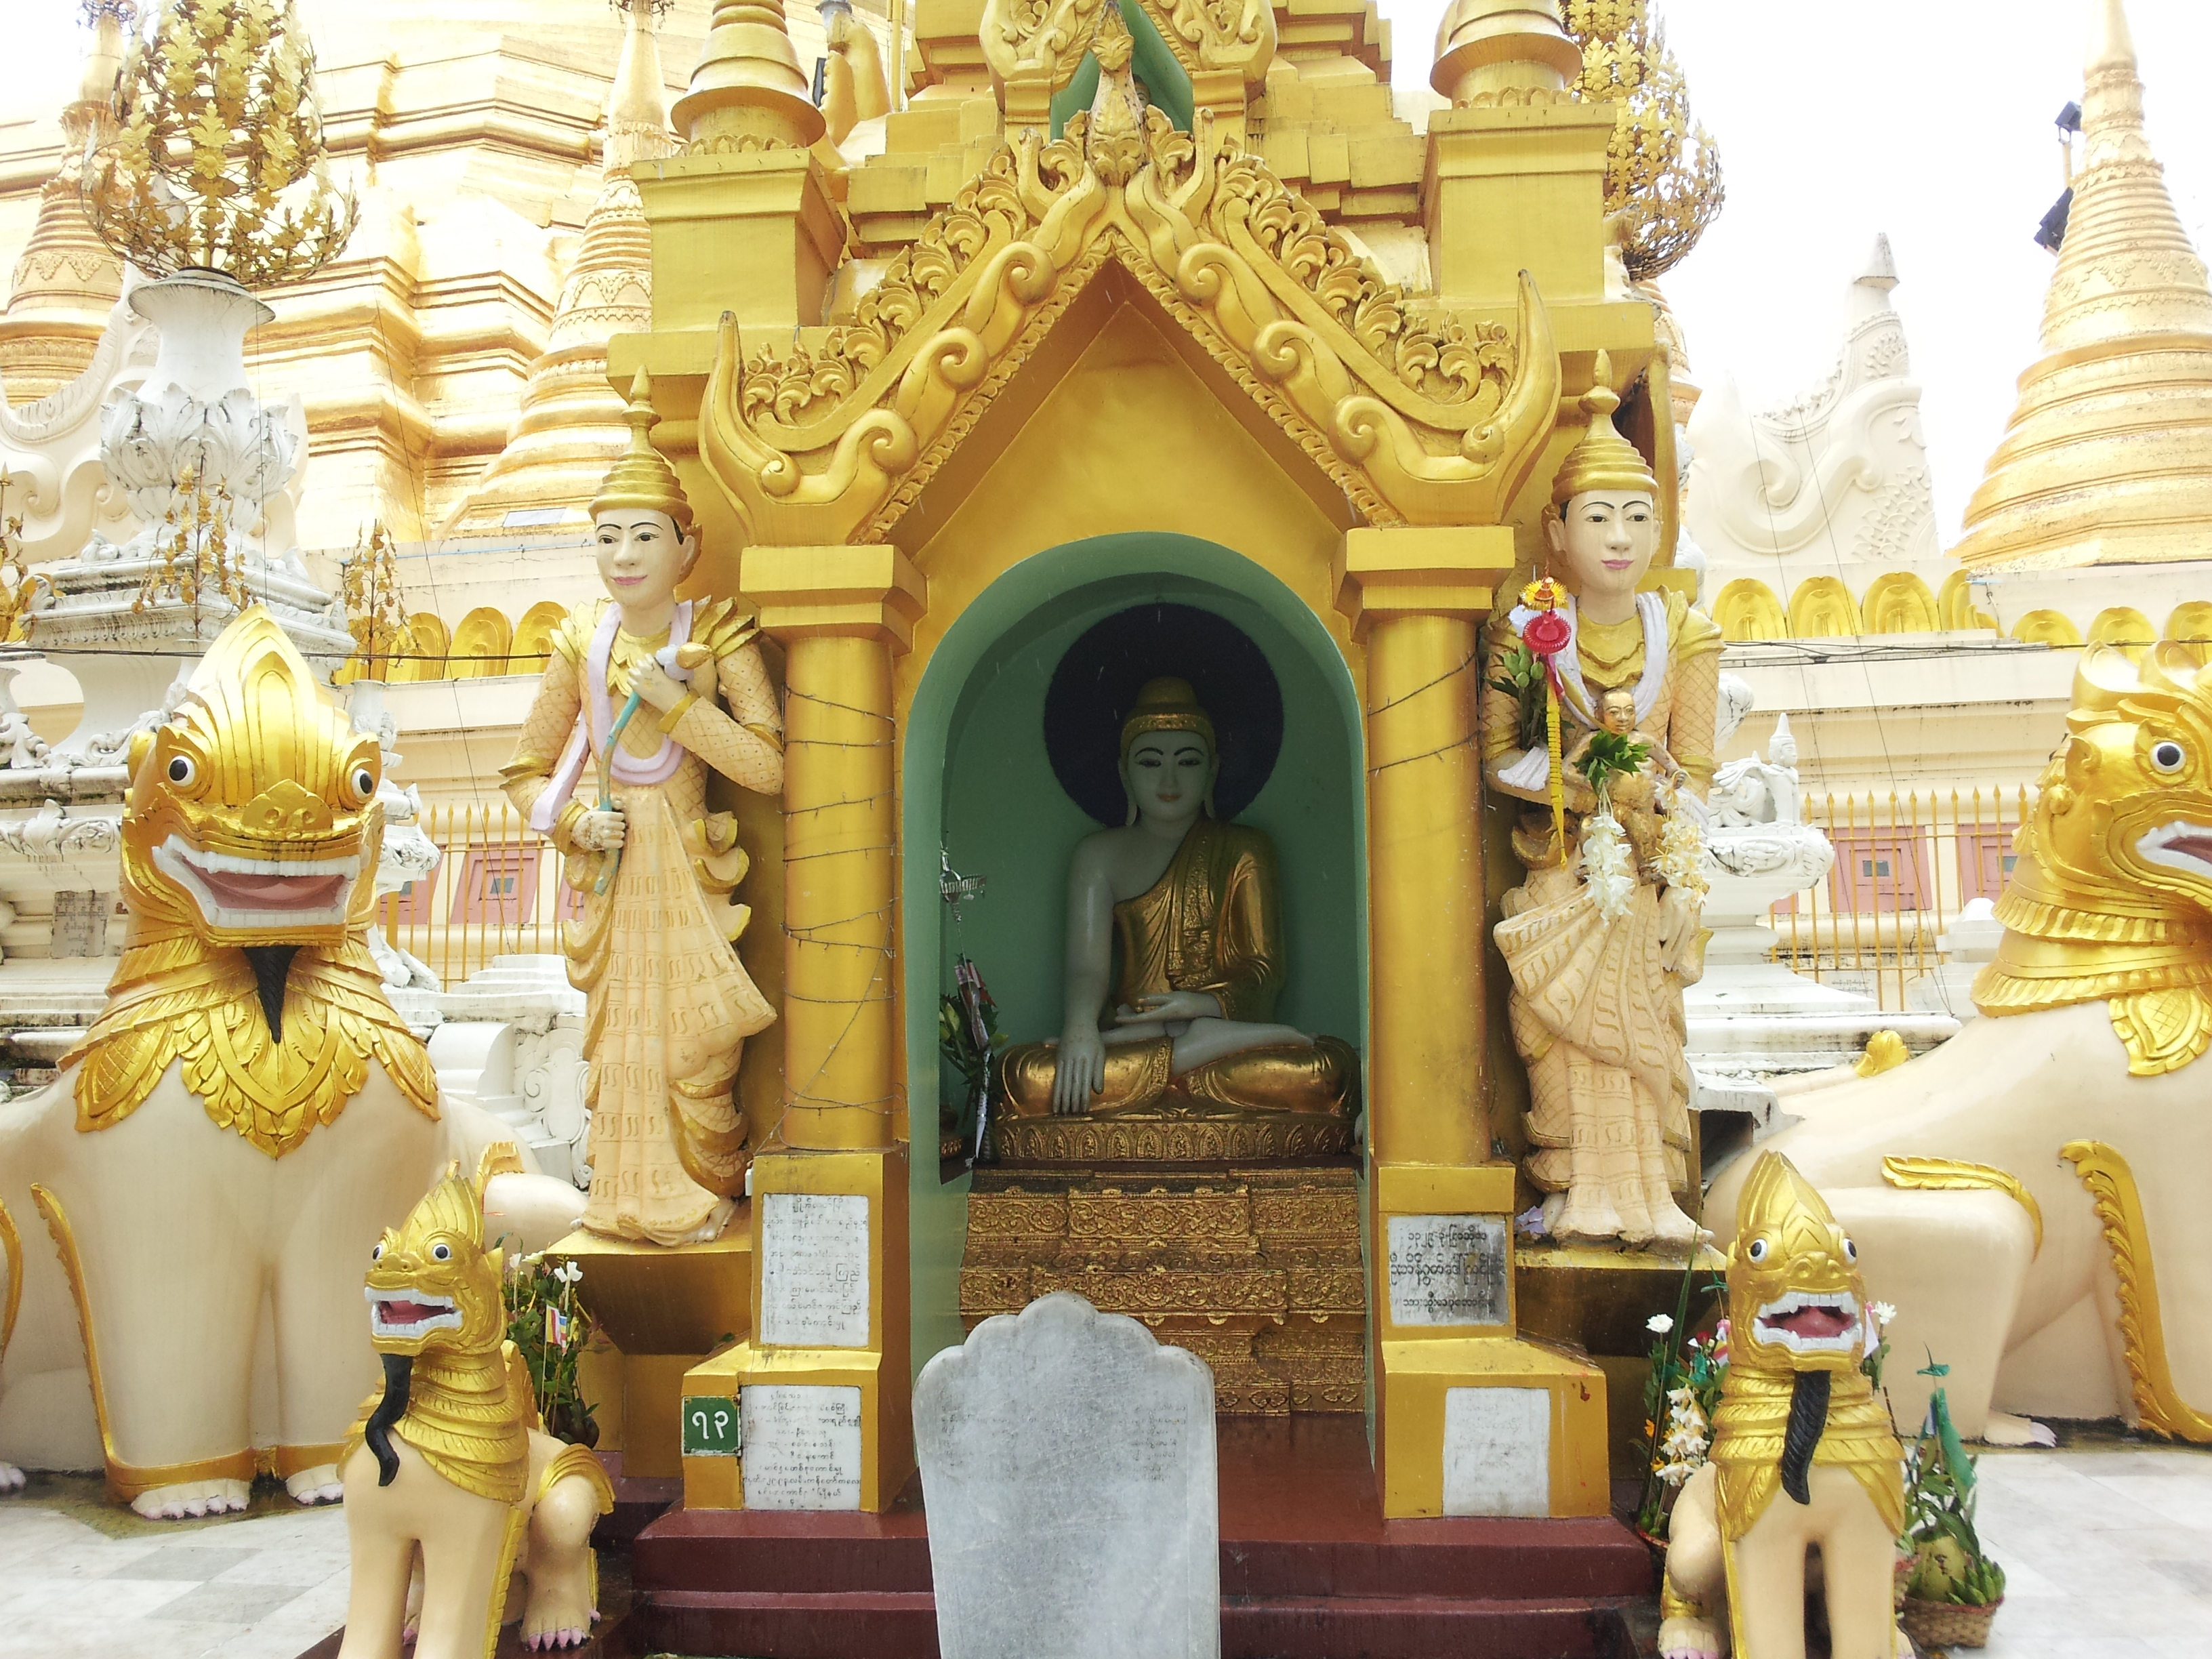 Shrine along the base of the Shwedagon Pagoda (photo Catherine Clover 2012)